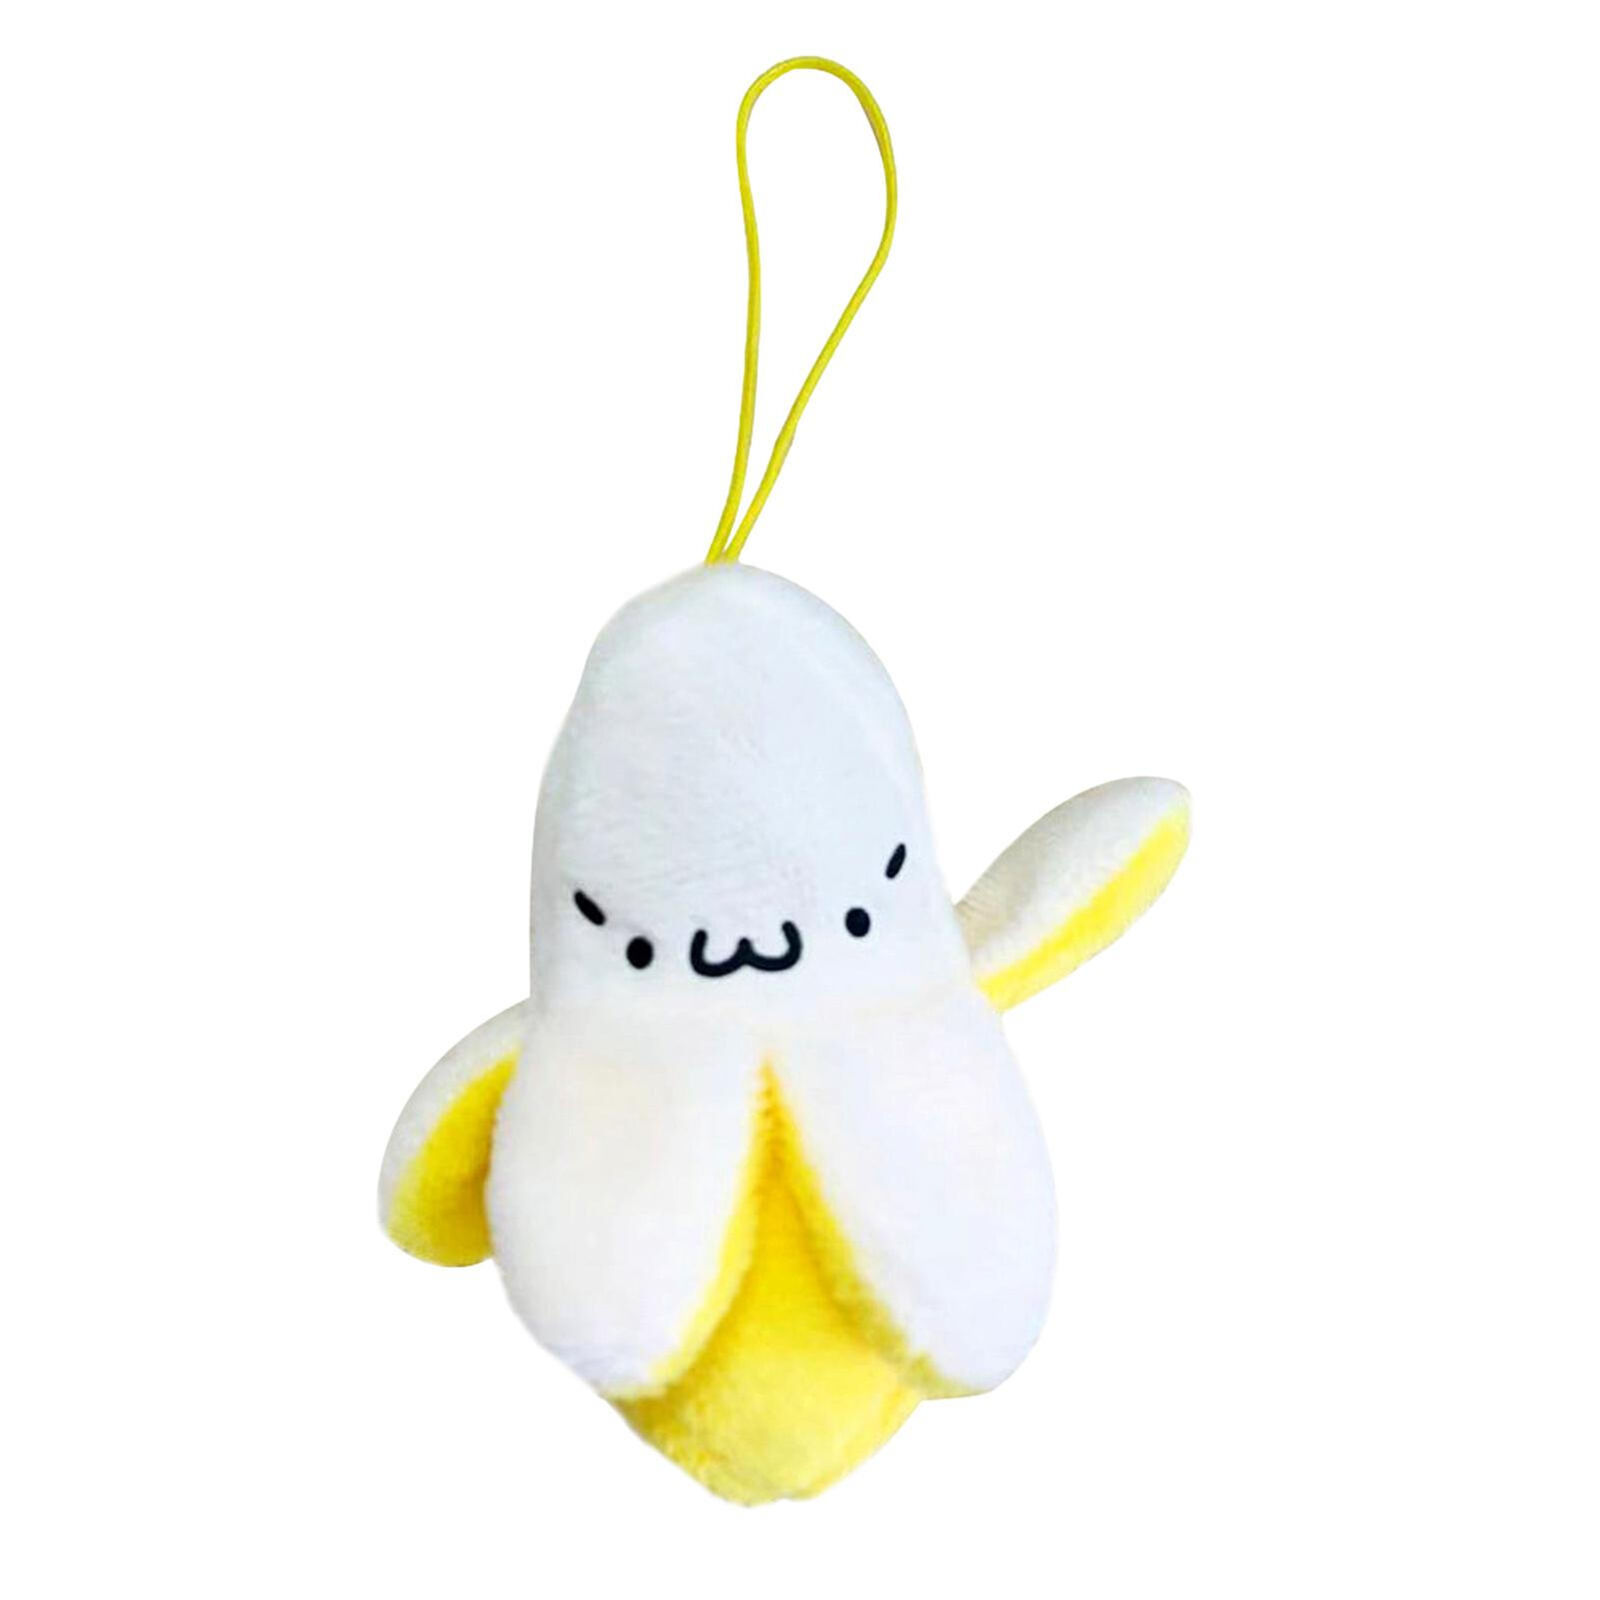 1-5PCS Cute Plush Banana Keychain Soft Peel Banana Plush Keychain Toy 